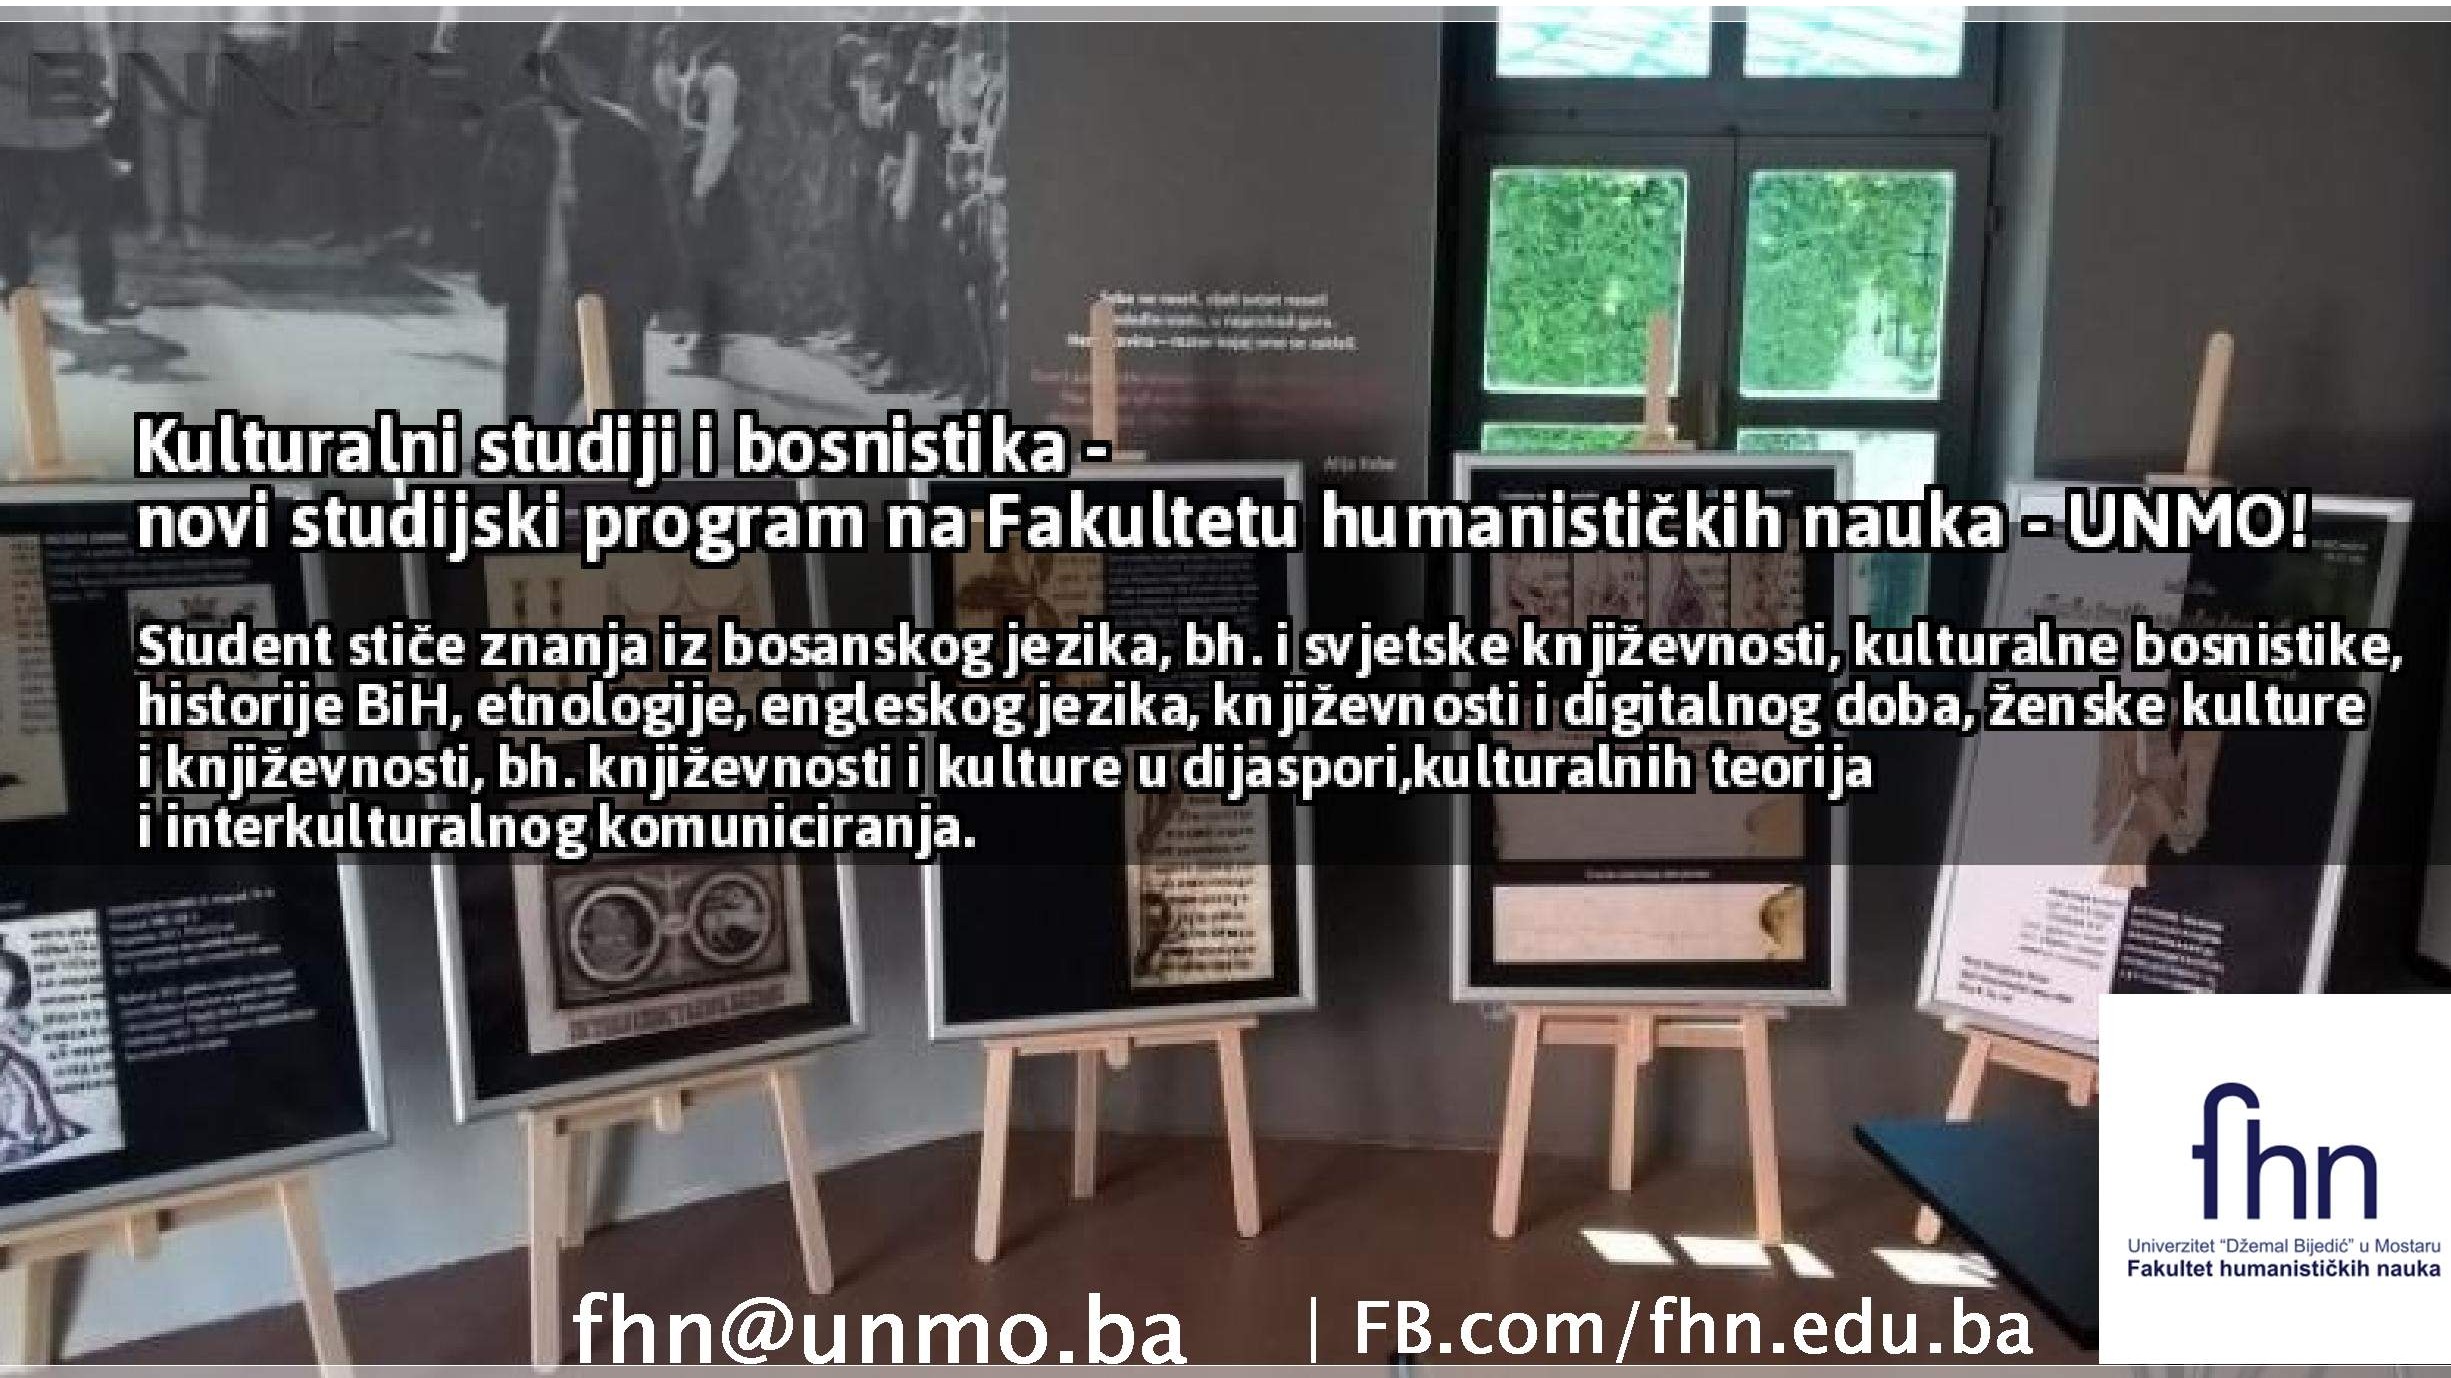 Kulturalni studiji i bosnistika na Fakultetu humanističkih nauka u Mostaru